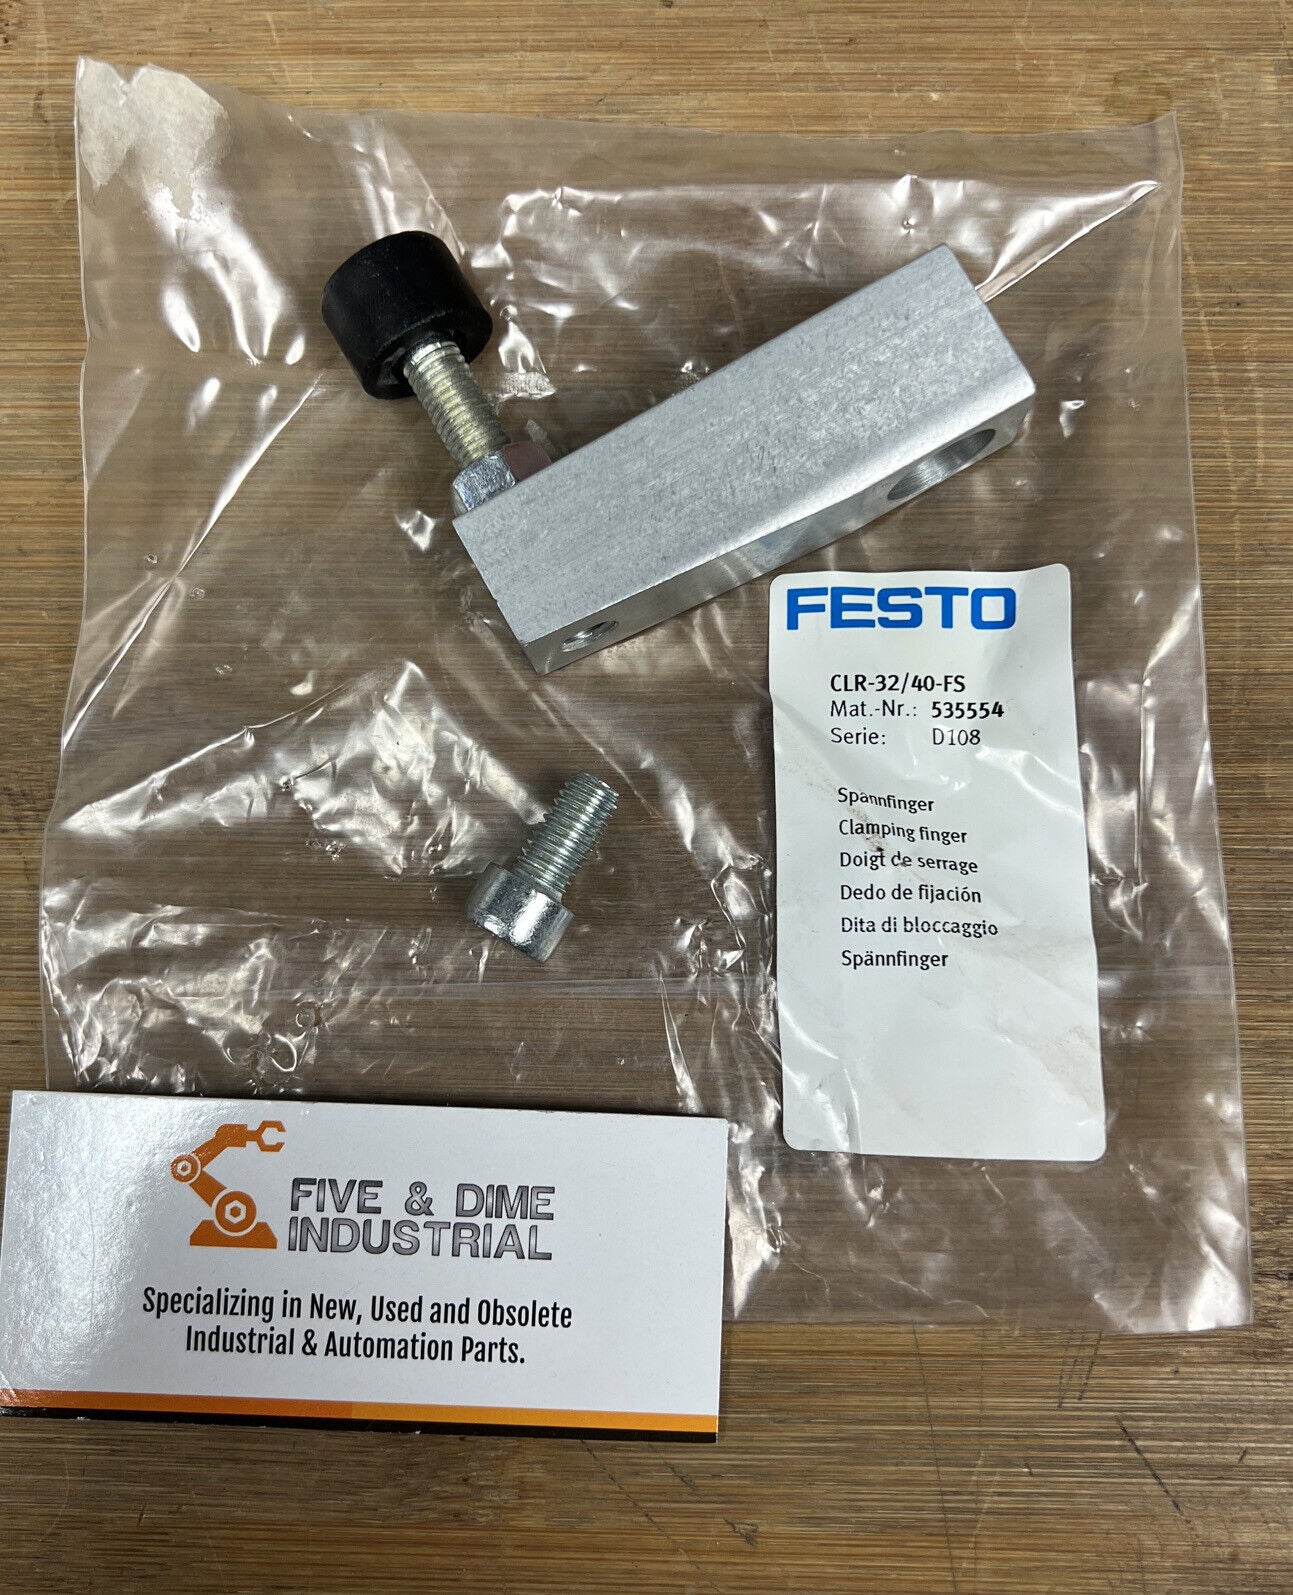 Festo CLR-32/40-FS / 535554 New Clamping Finger (YE100)